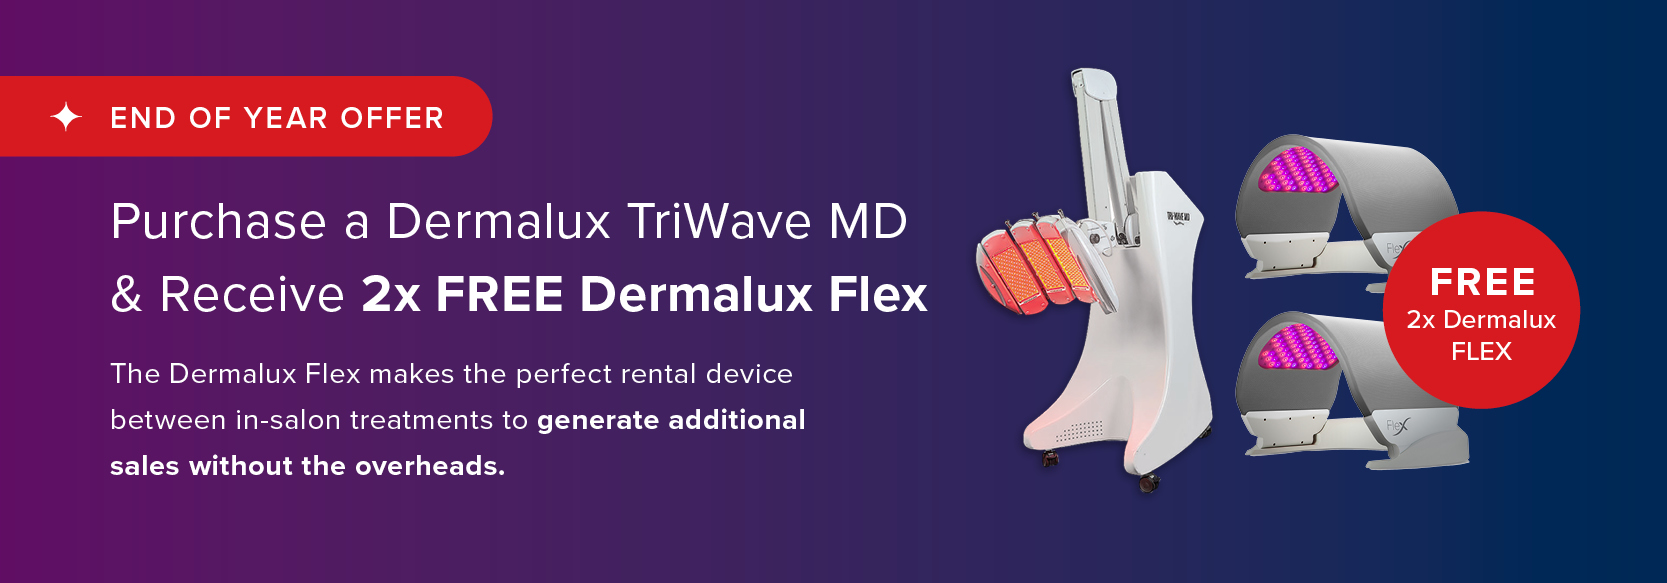 Dermalux MD + Flex Offer web2